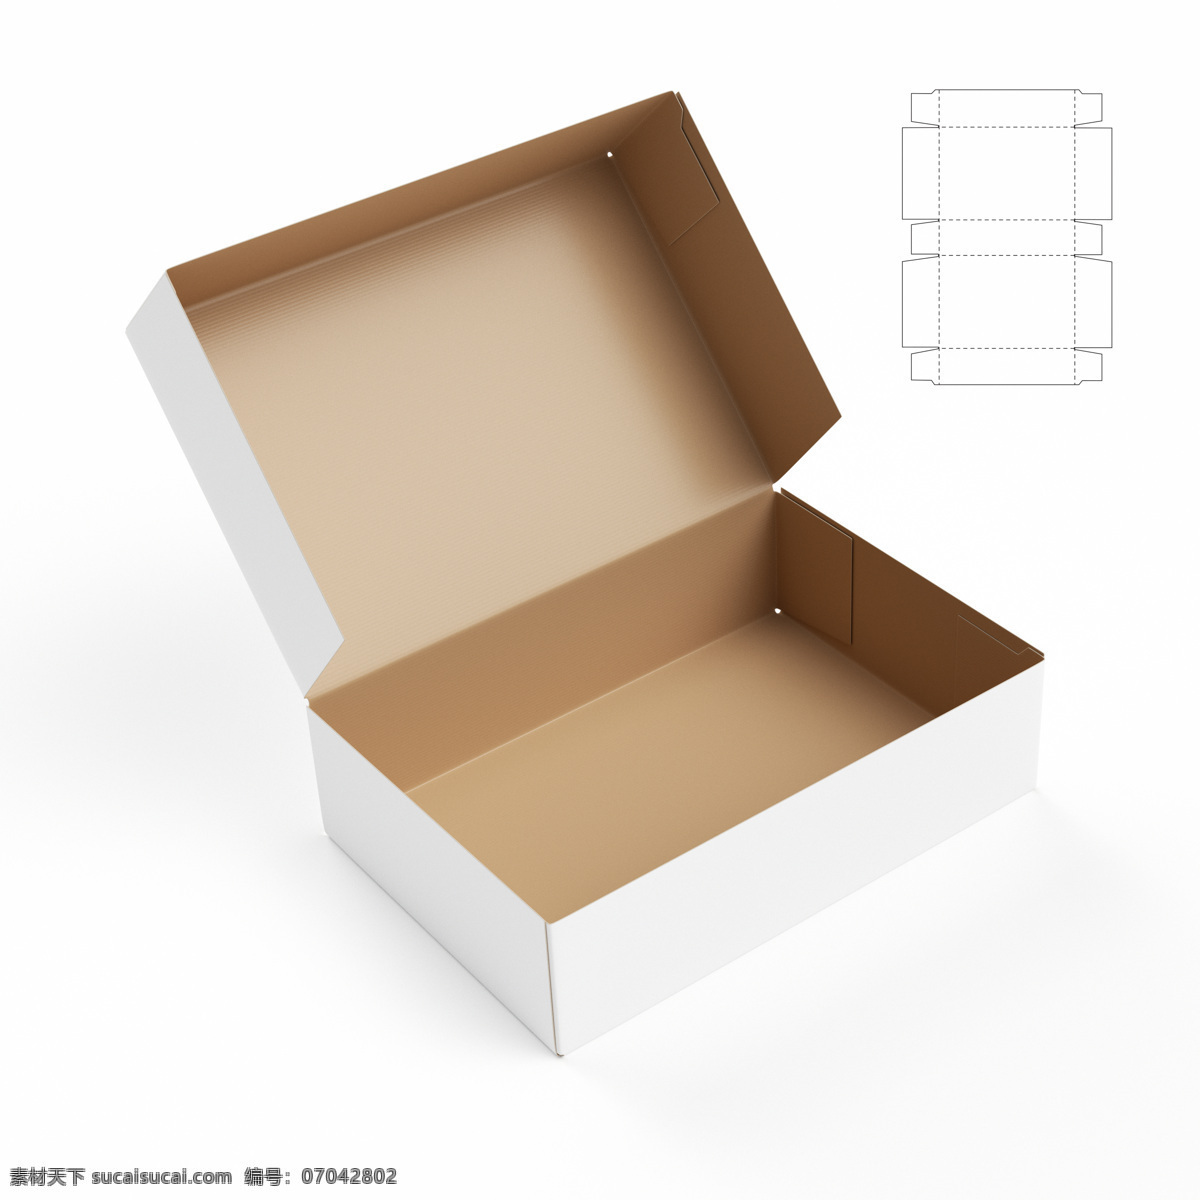 鞋子 盒子 鞋盒 包装盒模板 包装盒设计 创意包装设计 包装盒展开图 包装效果图 包装盒子 包装设计 其他类别 生活百科